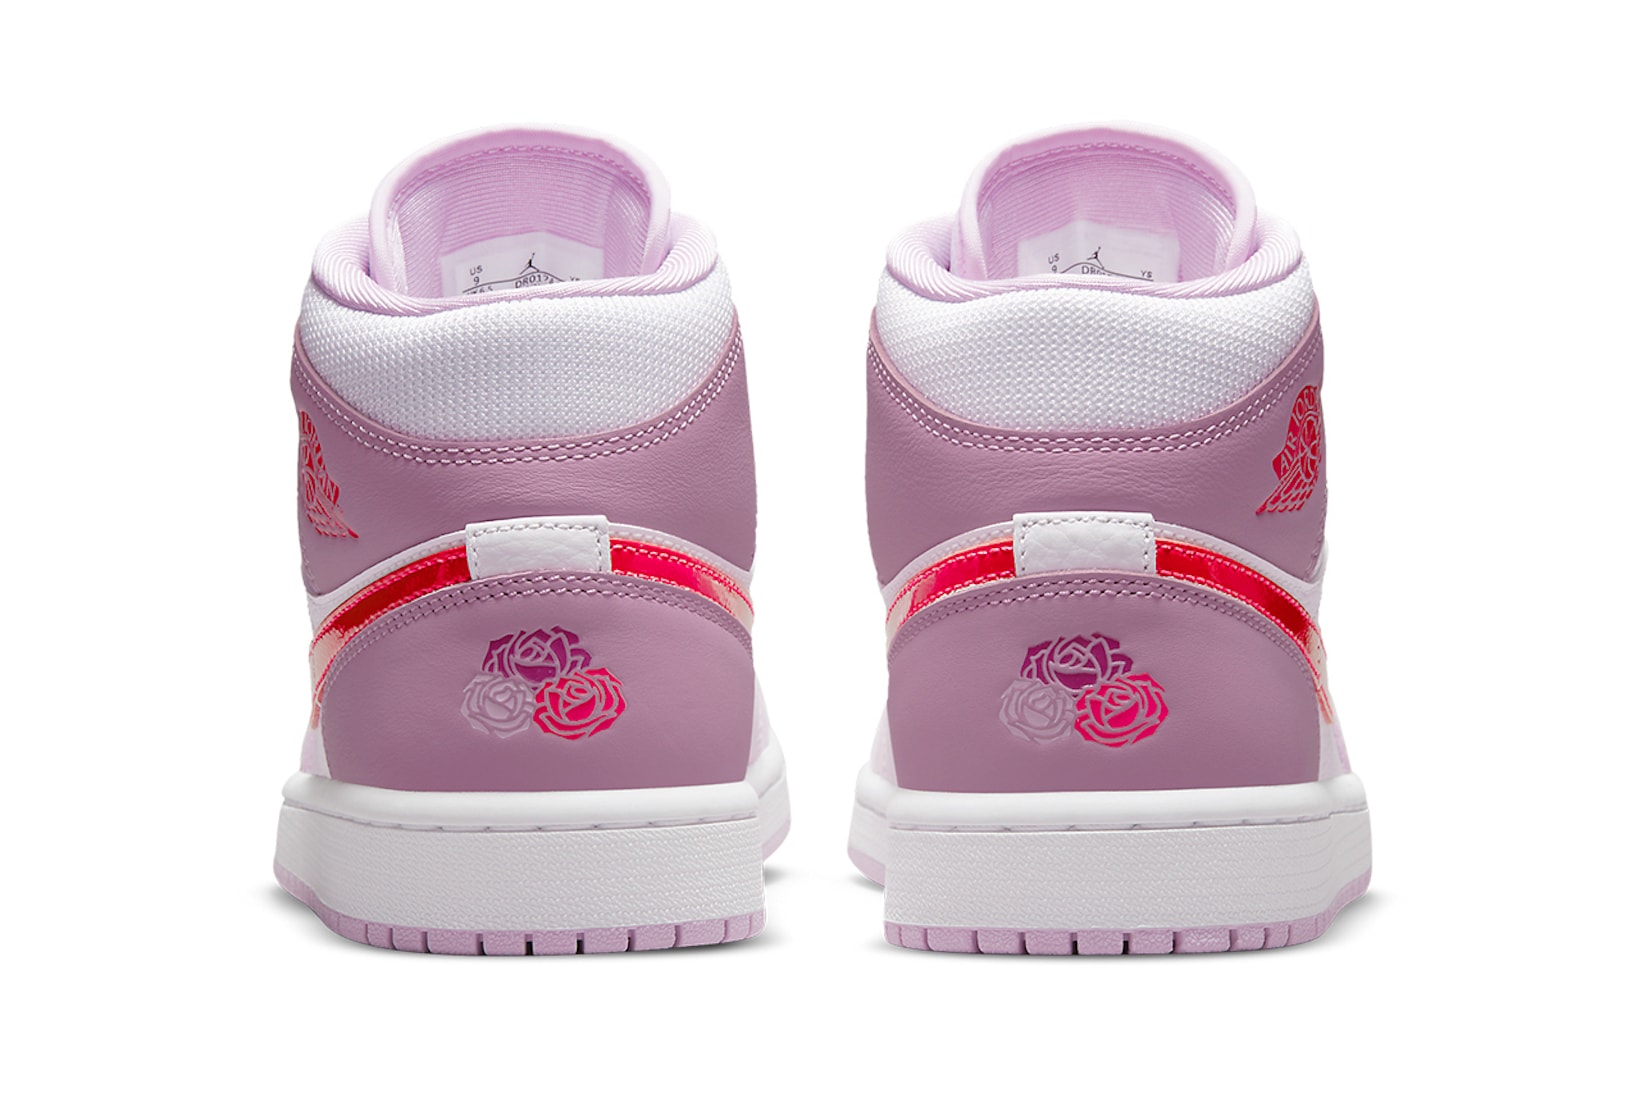 nike air jordan 1 aj1 mid valentines day womens sneakers red pink purple white sneakers footwear shoes